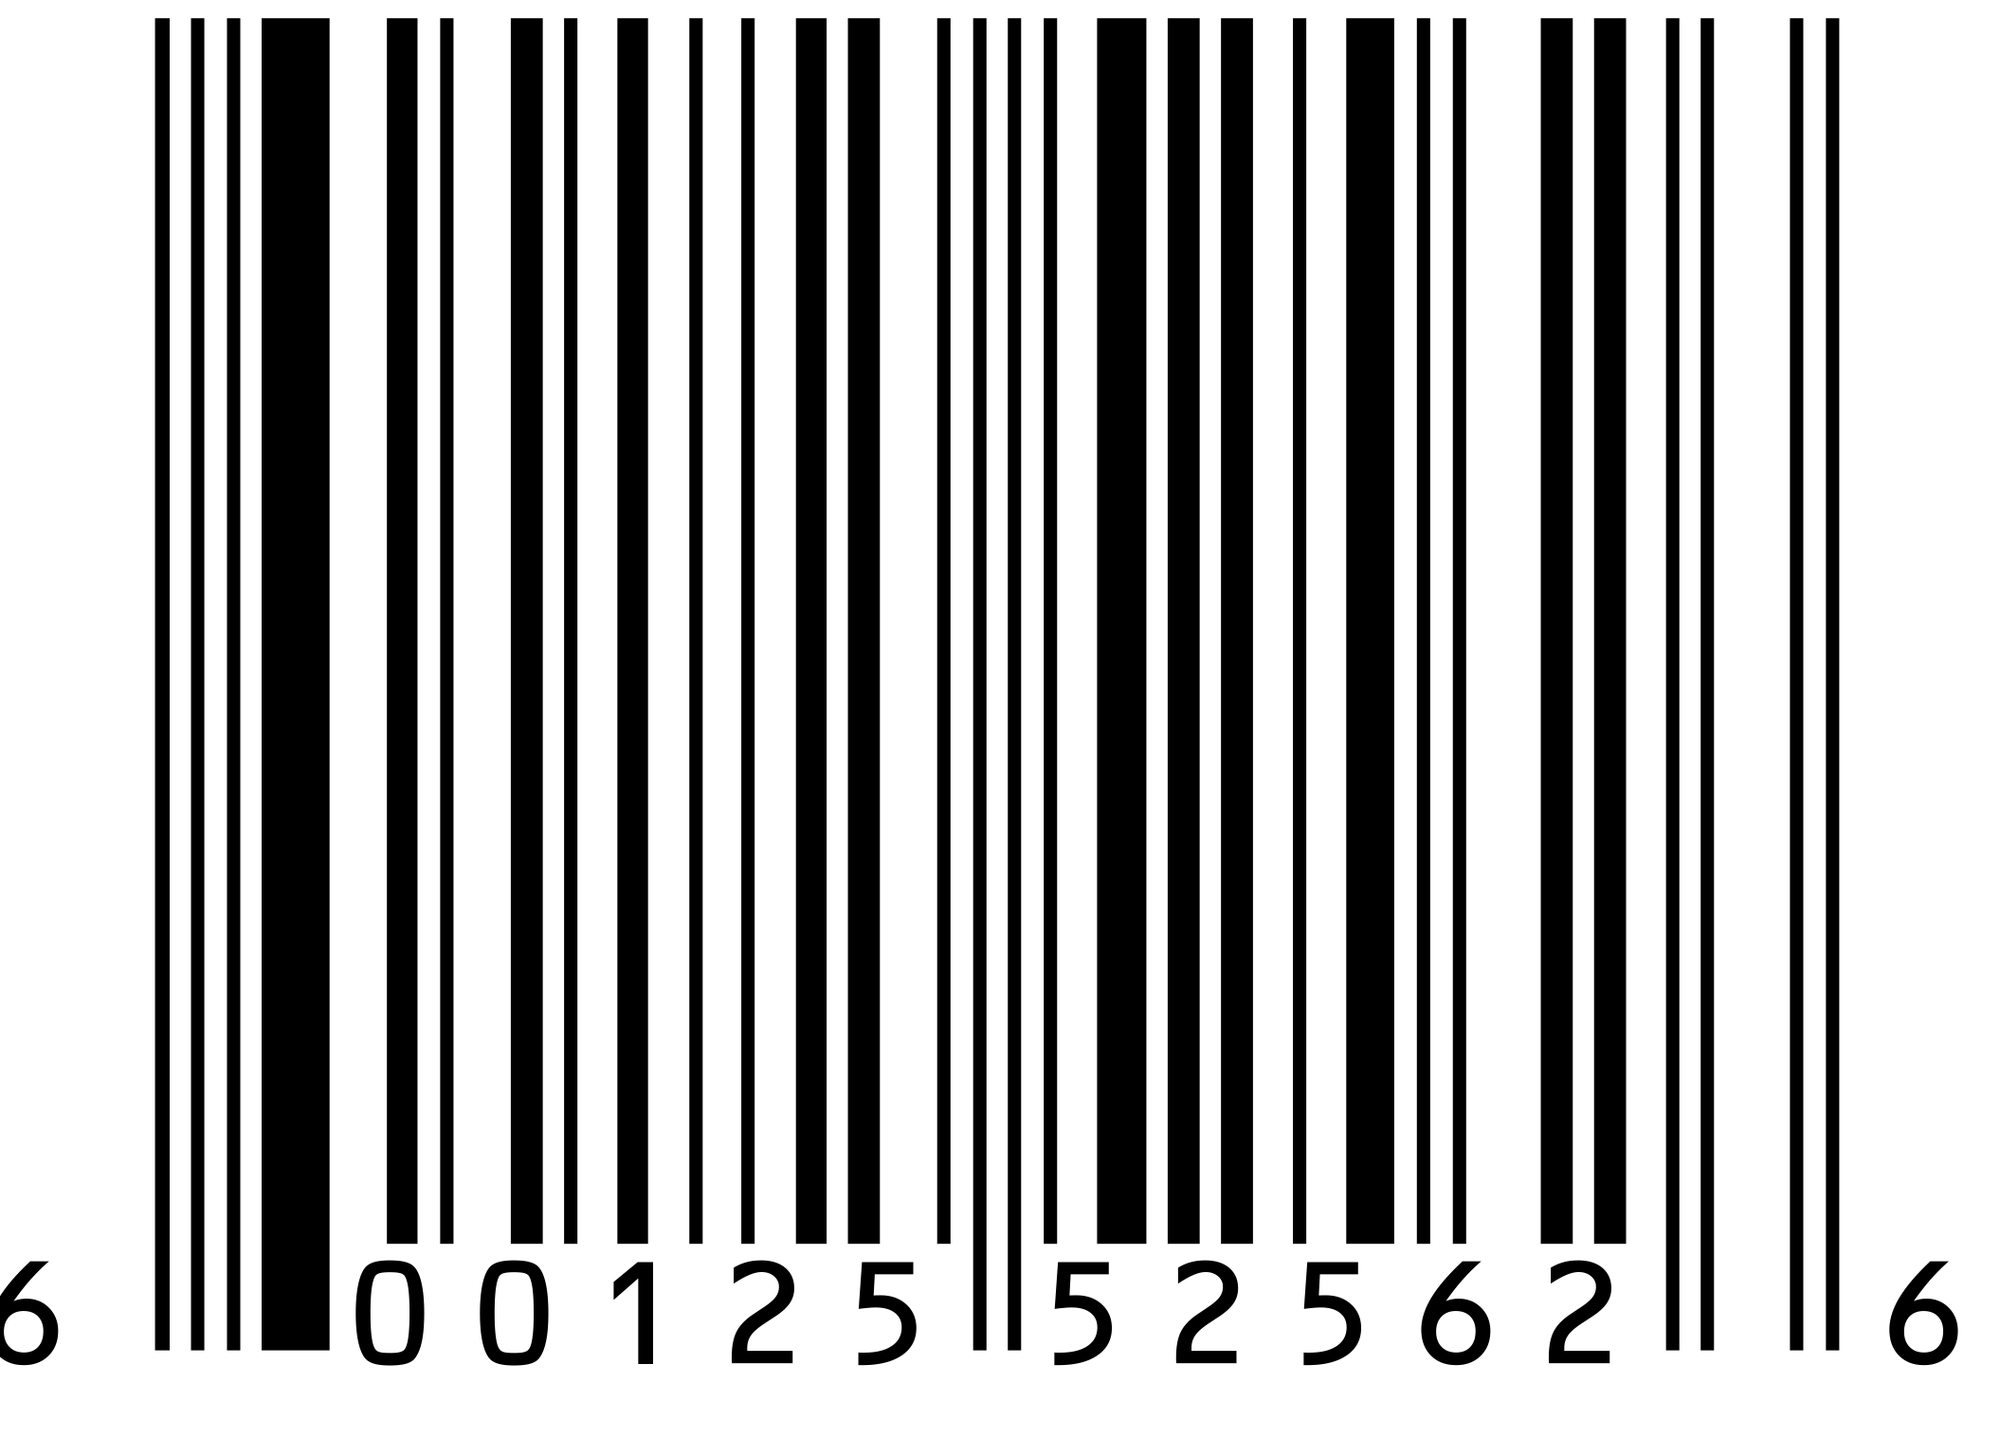 Myth's regarding barcode generating